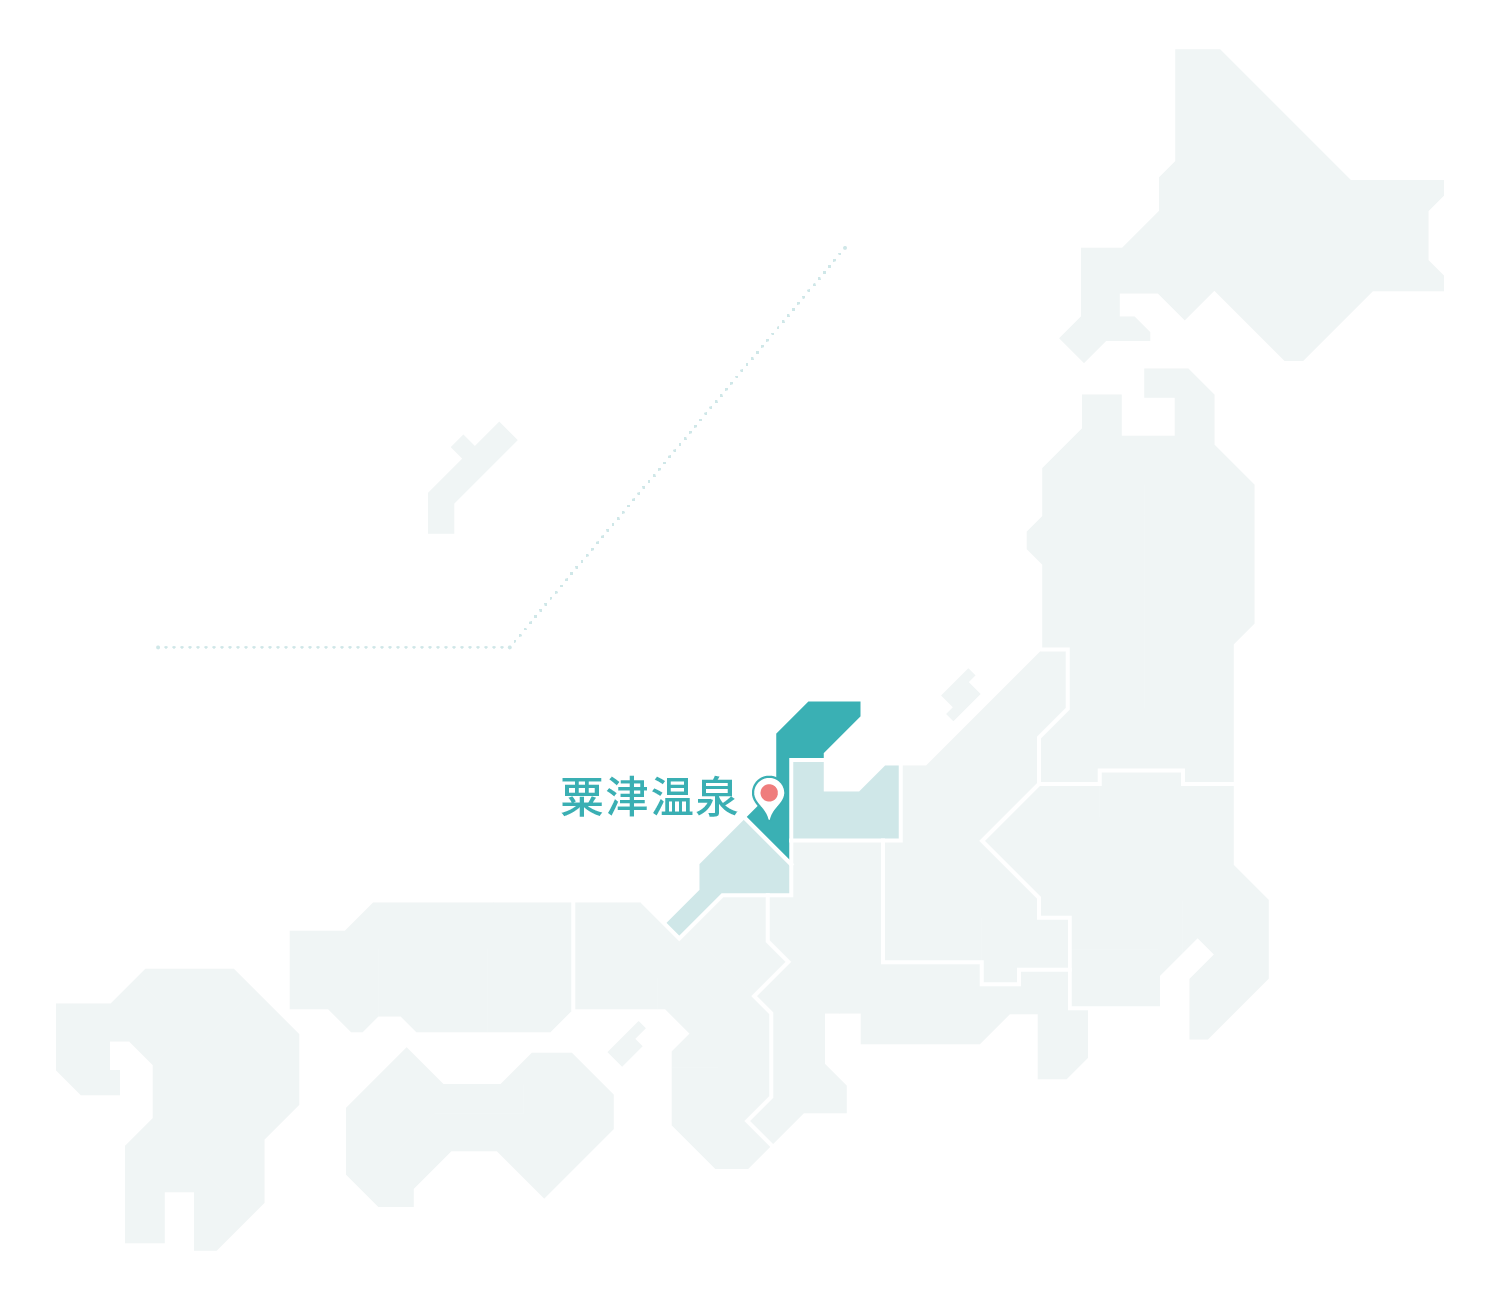 粟津温泉マップ